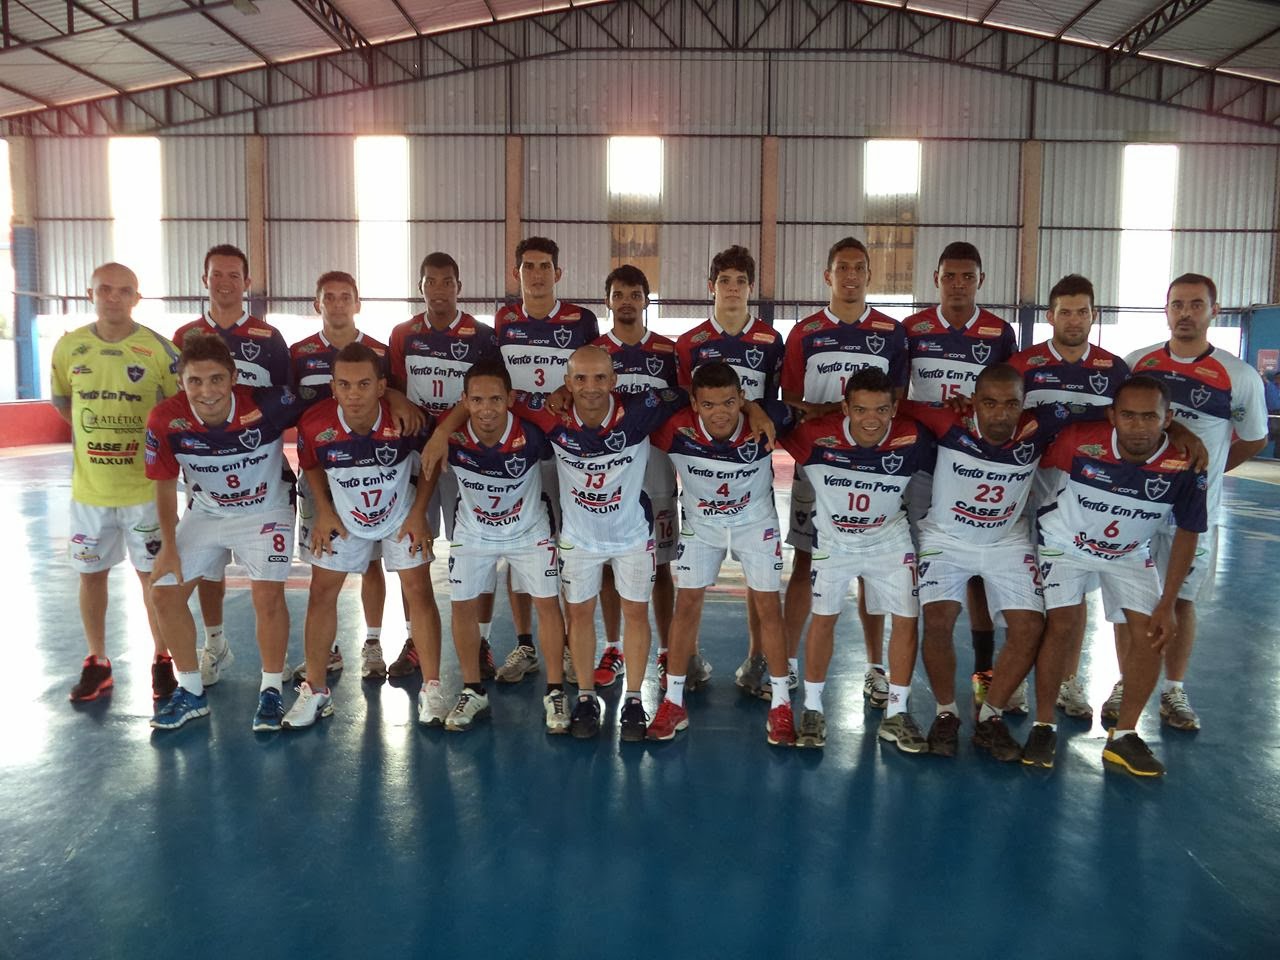 equipe-baiana-do-lem-vento-em-popa-janjar-2014